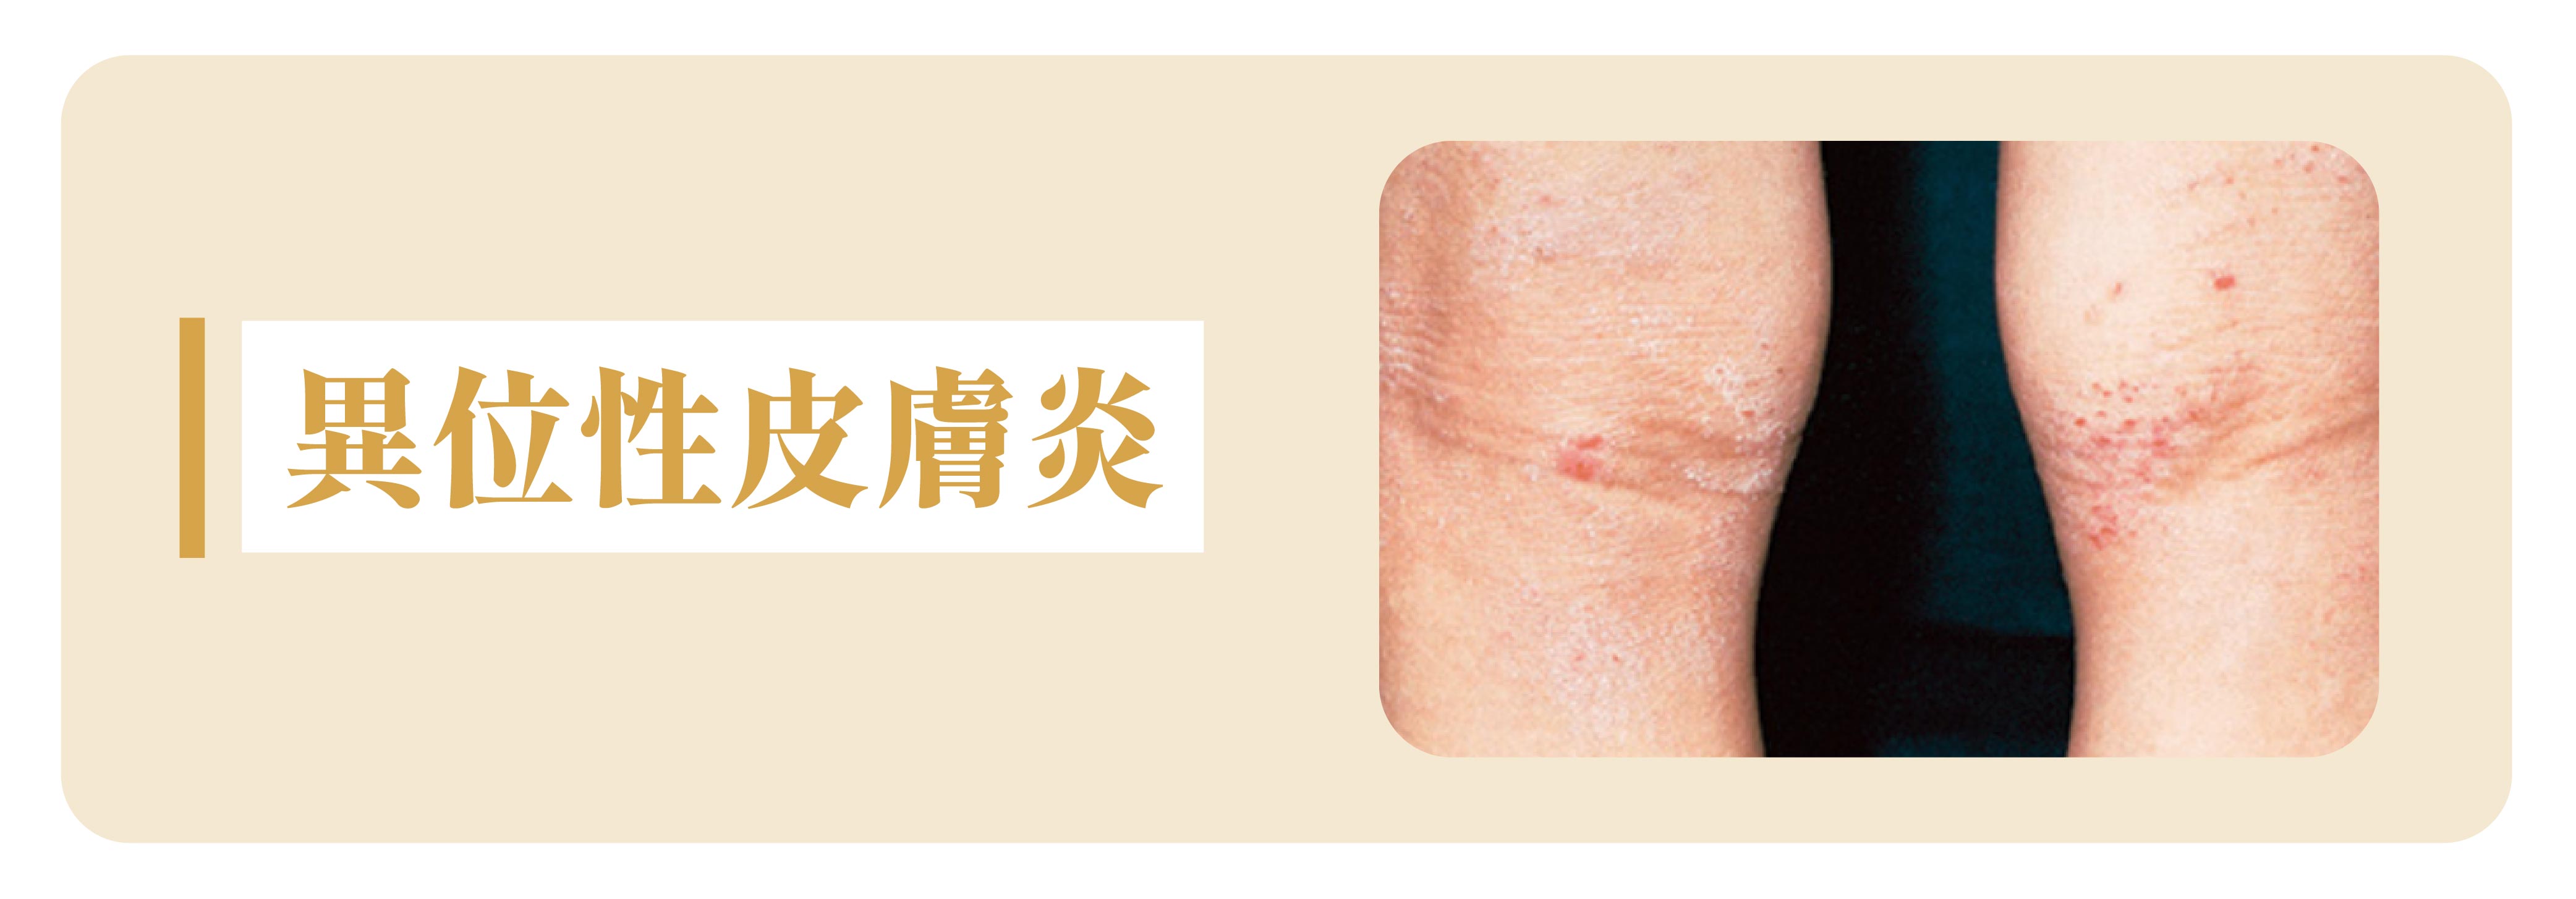 宝宝常见4大肌肤问题和预防护理法日本最权威小儿皮肤科医师山本一哉说给你